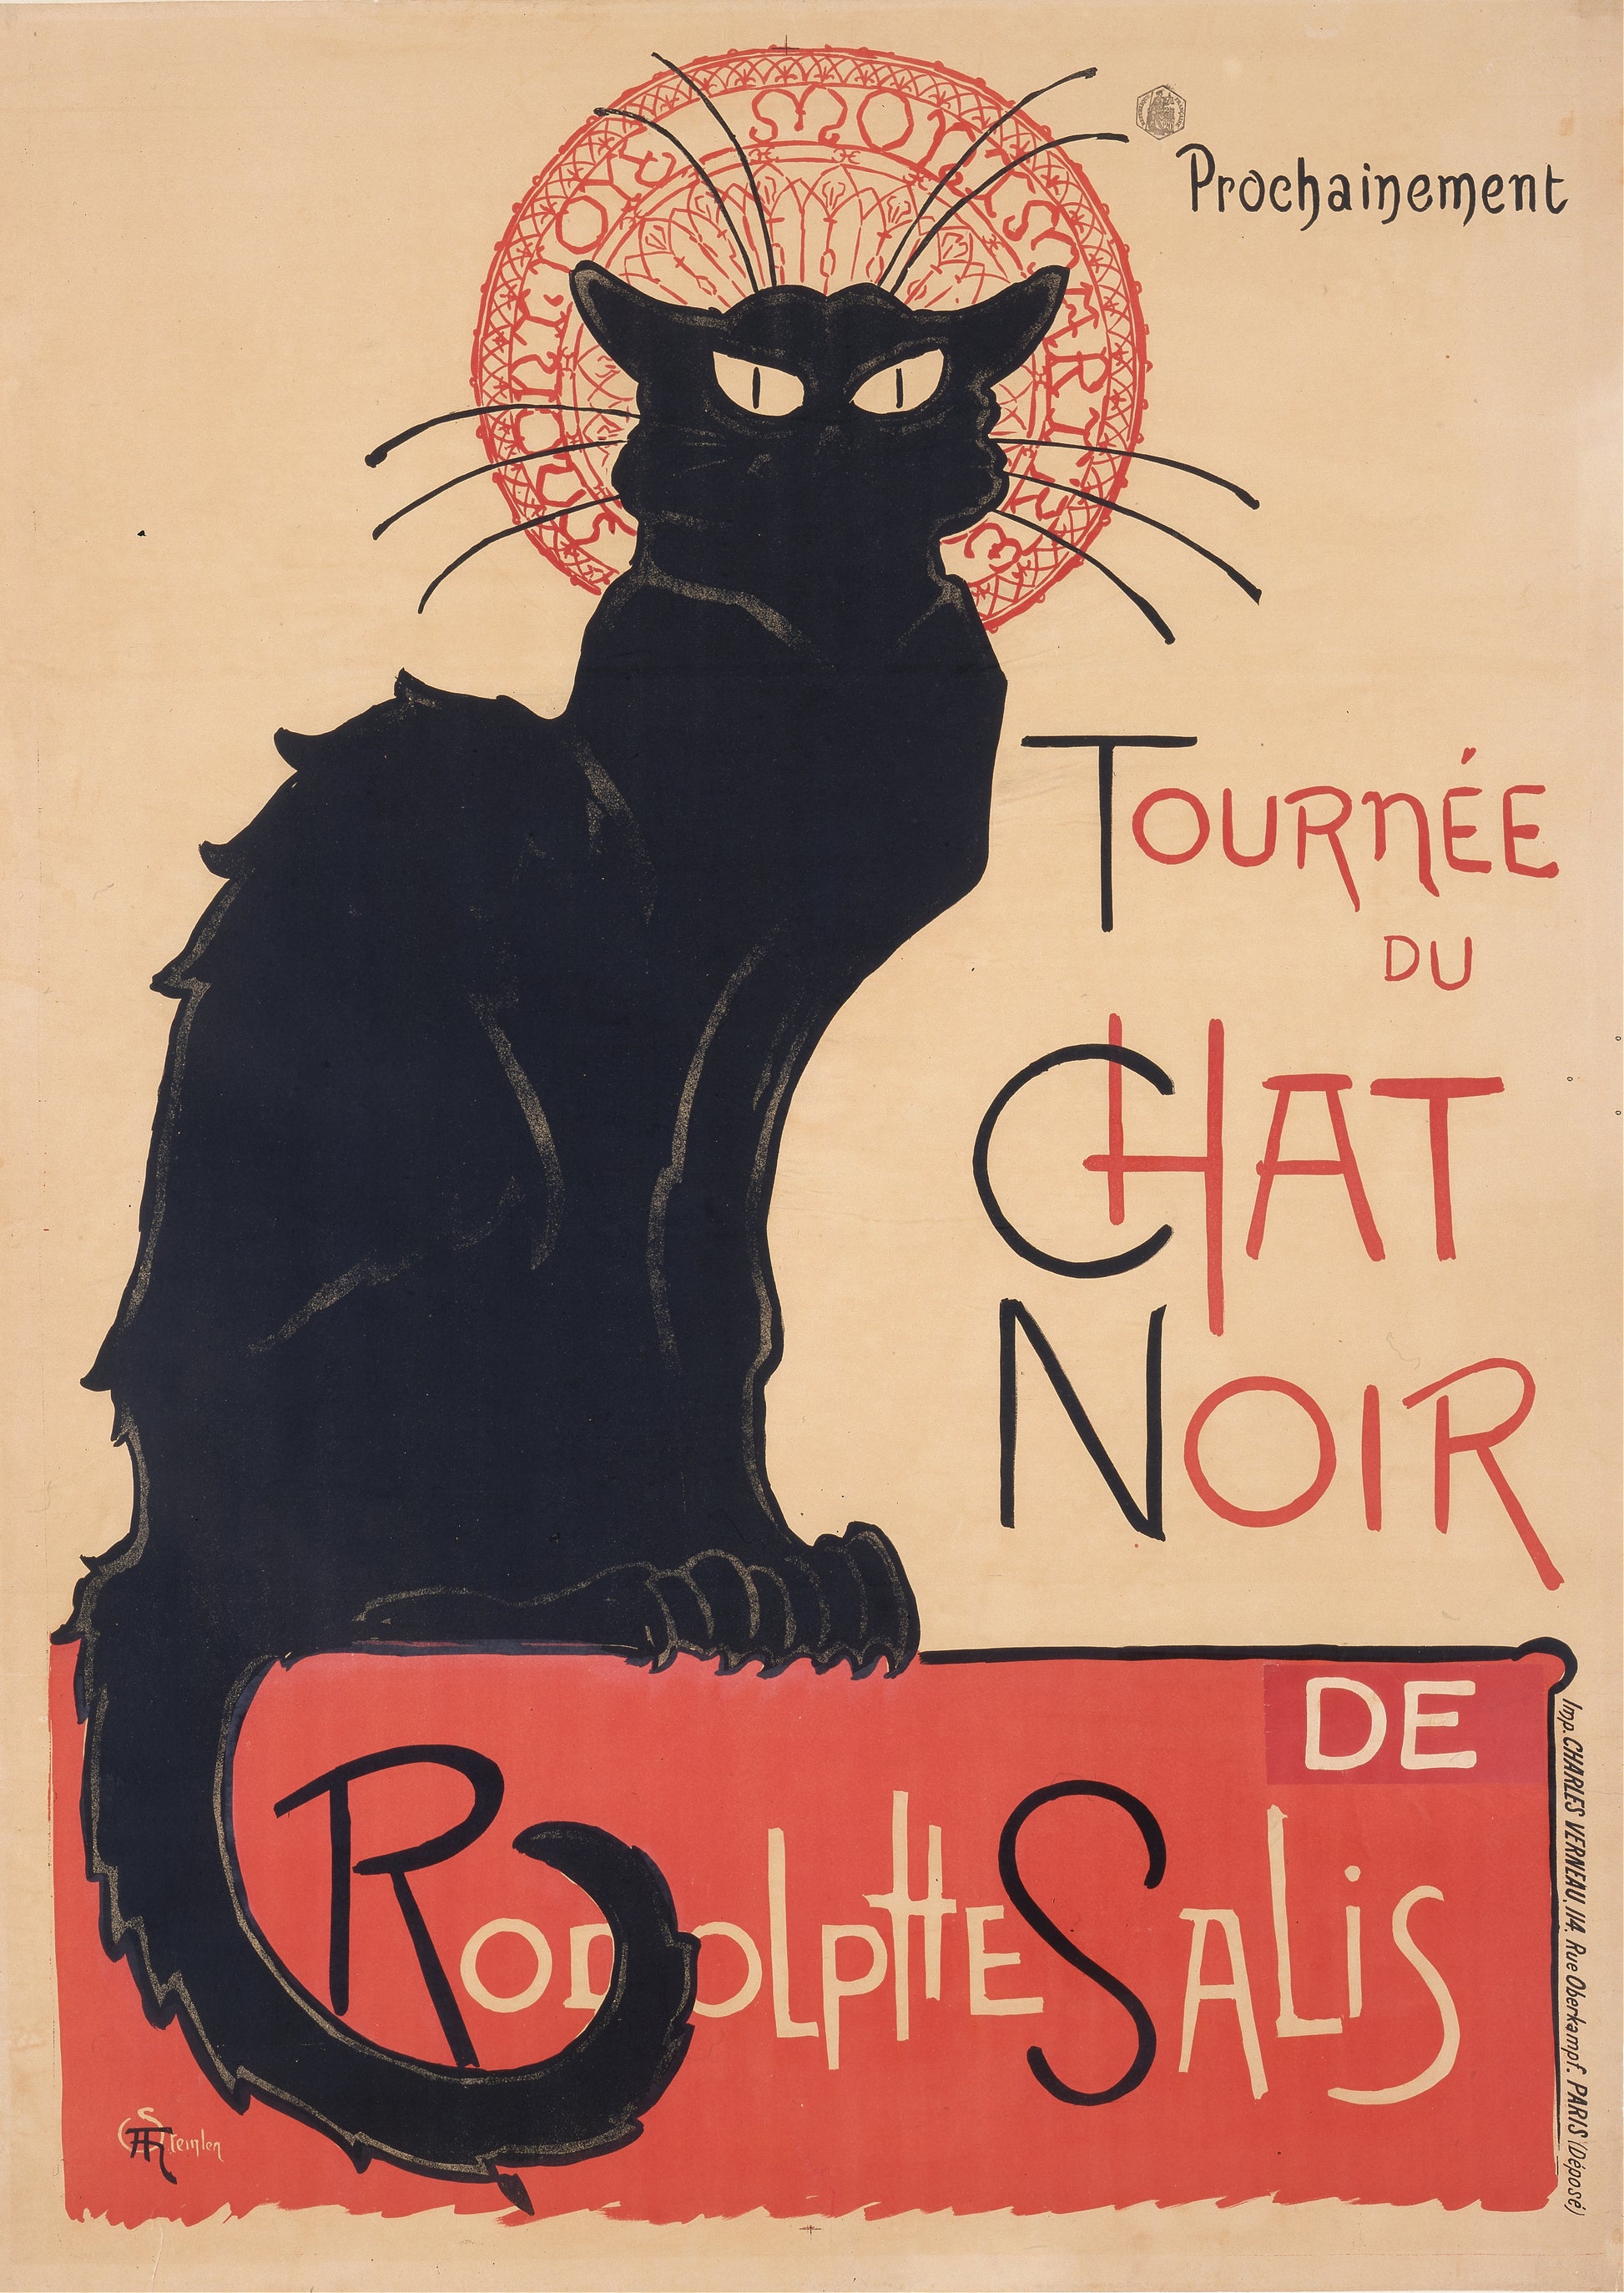 Tournee du chat noir print (Paris,1890s) | Theophile Steinlen Posters, Prints, & Visual Artwork The Trumpet Shop   